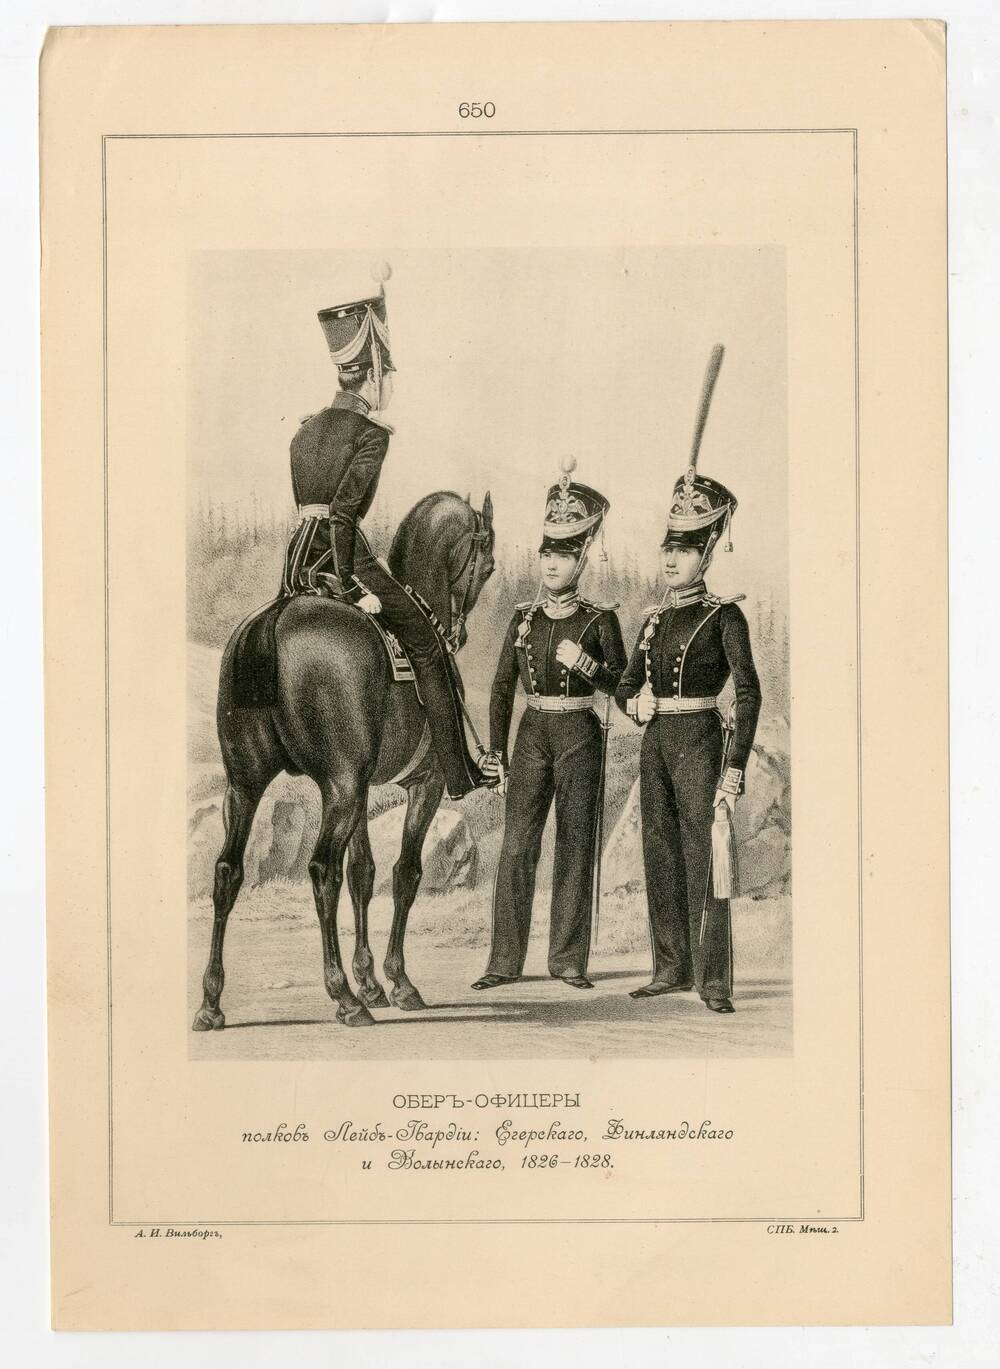 Литография Обер-Офицеры полков Лейб-Гвардии: Егерского, Финляндского и Волынского, 1826-1828